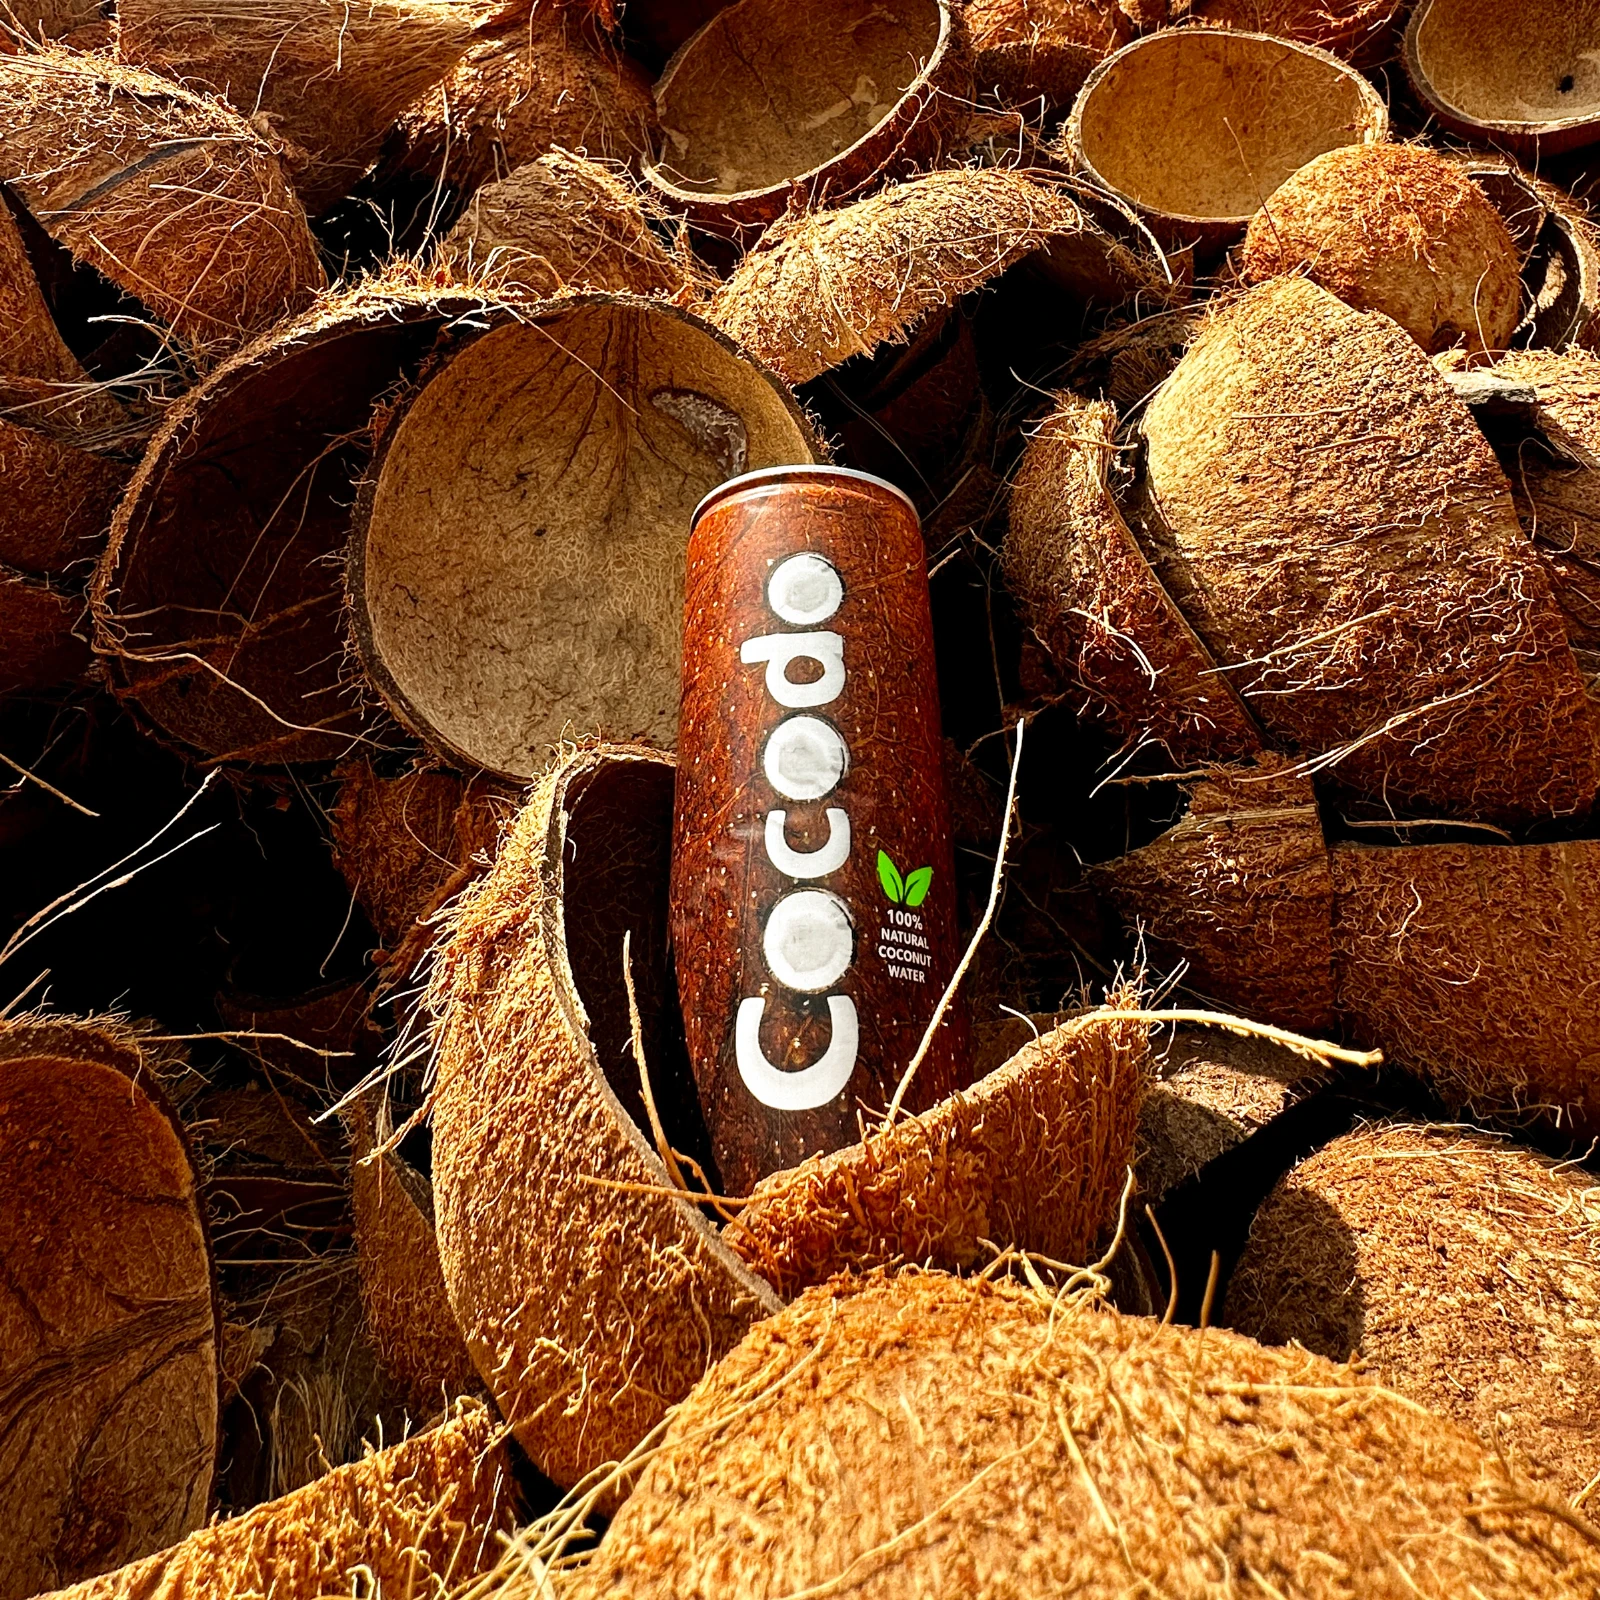 Cocodo - 100% Natürliches Kokosnusswasser | Kalorienarm, Frisch & Zusatzstofffrei 4